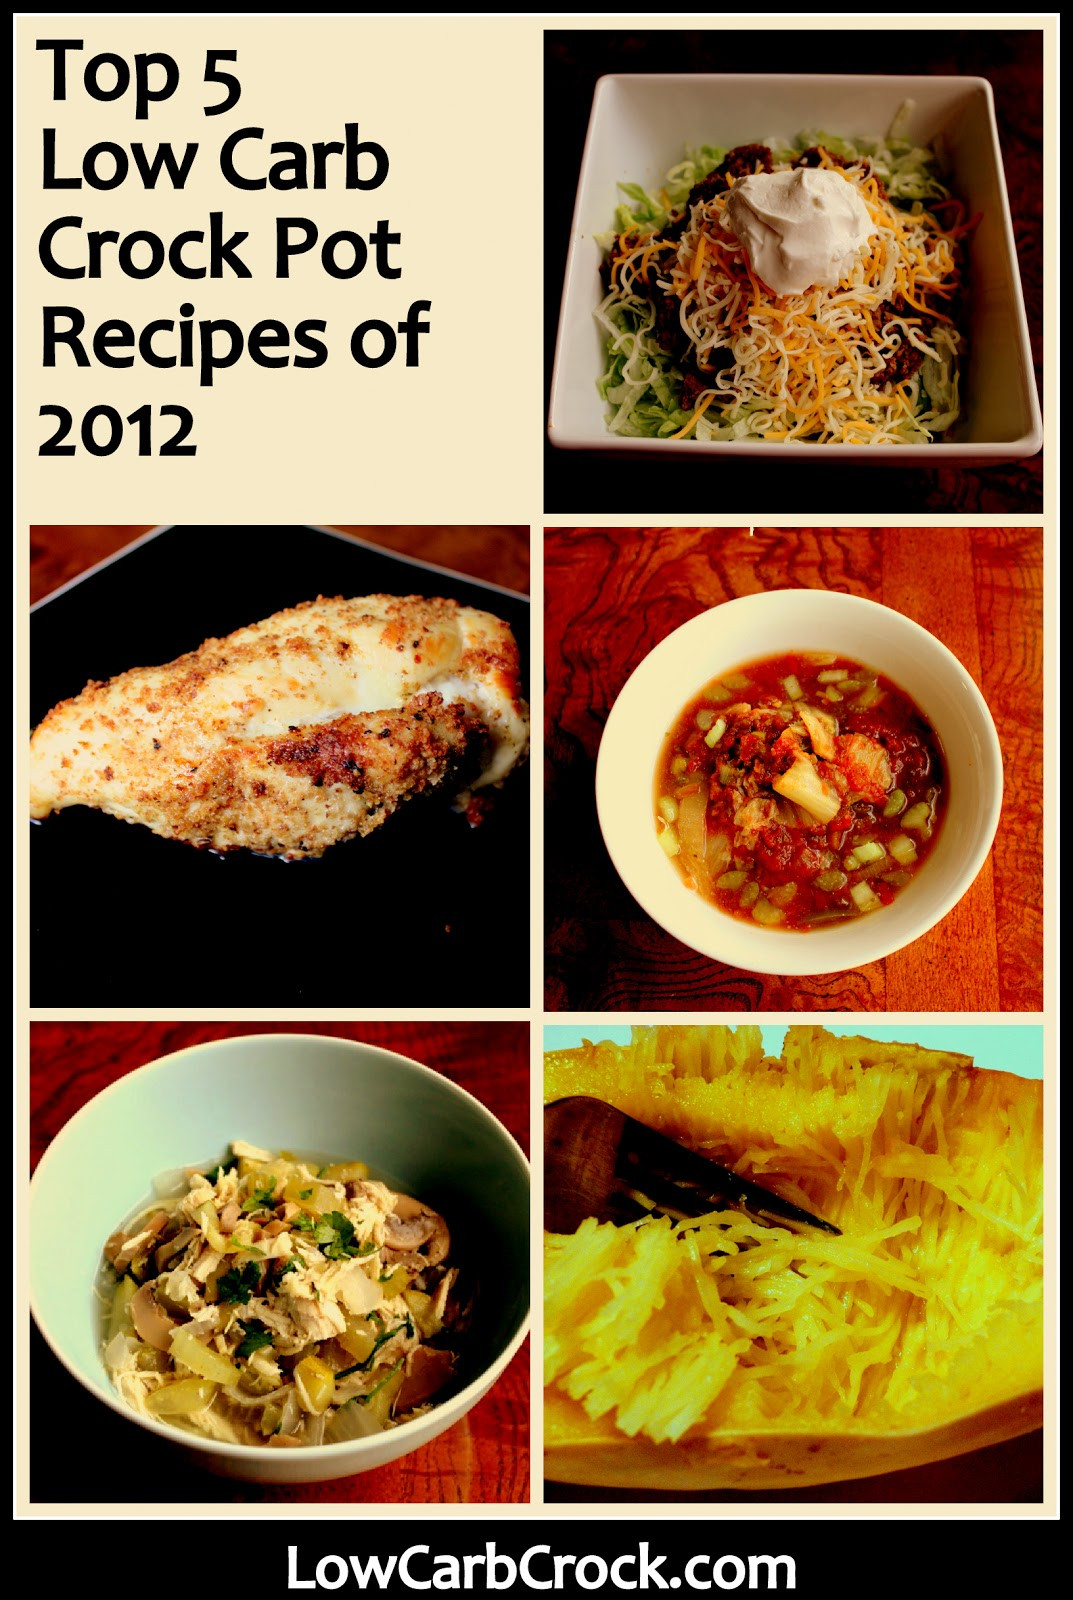 Low Carb Chicken Crock Pot Recipes
 Top 5 Low Carb Crock Pot Recipes of 2012